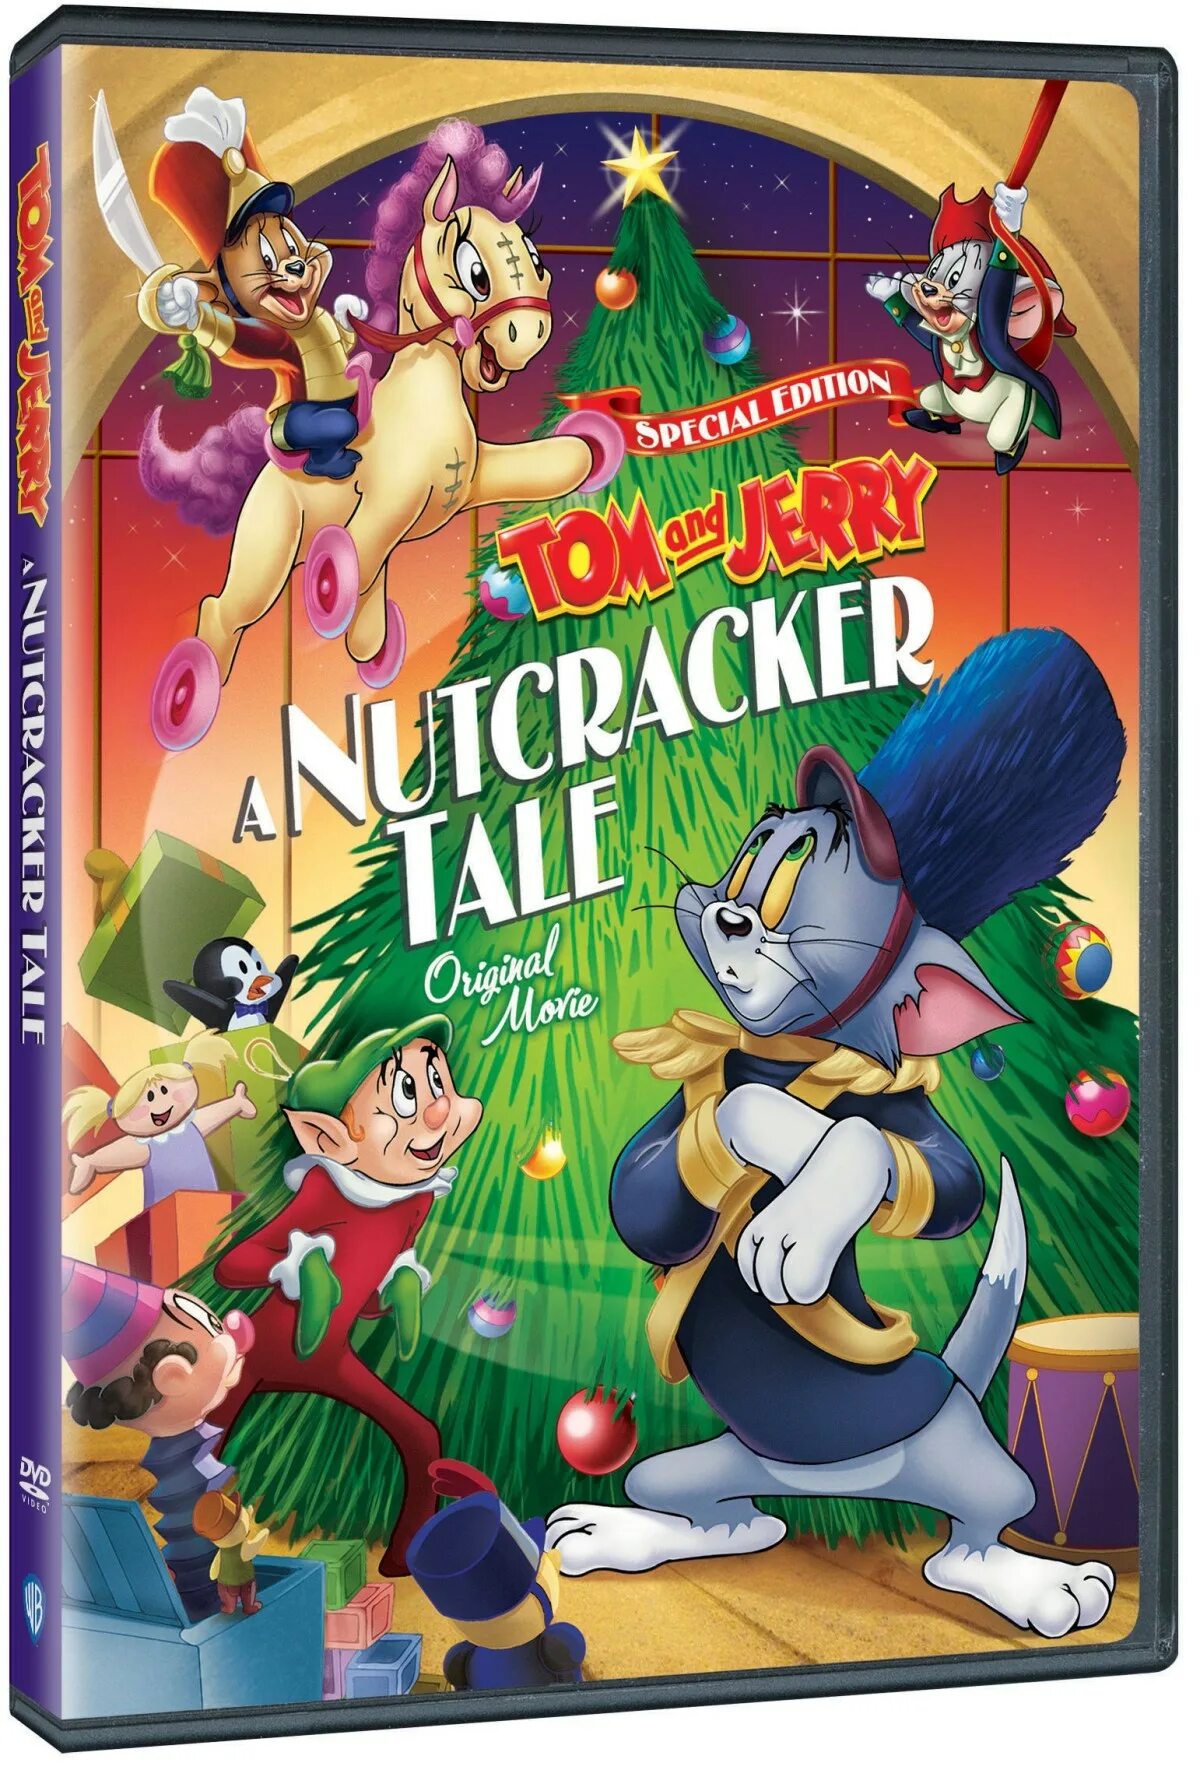 Toms tales. Том и Джерри сказки DVD. Tom and Jerry Tales DVD. Том и Джерри: маленькие помощники Санты DVD. Том и Джерри обложка DVD.